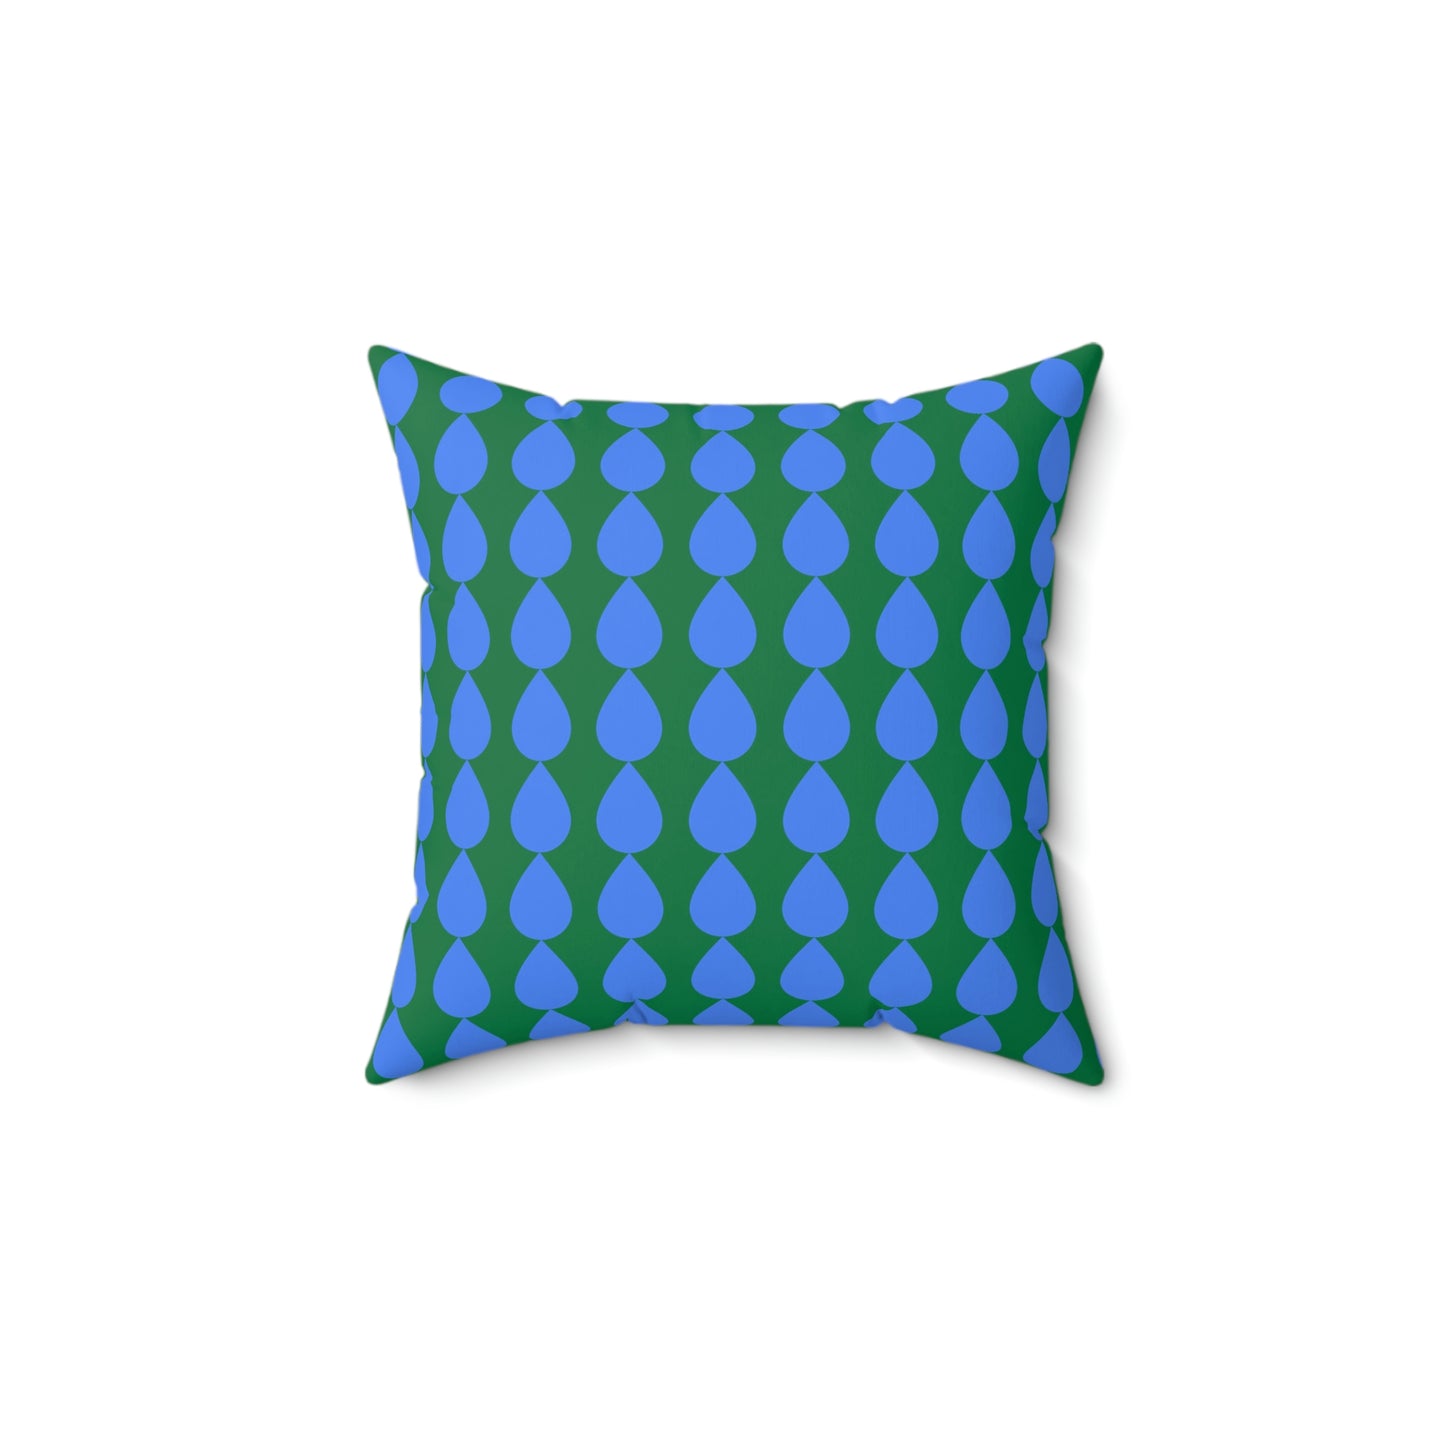 Spun Polyester Square Pillow Case ”Water Drop on Dark Green”